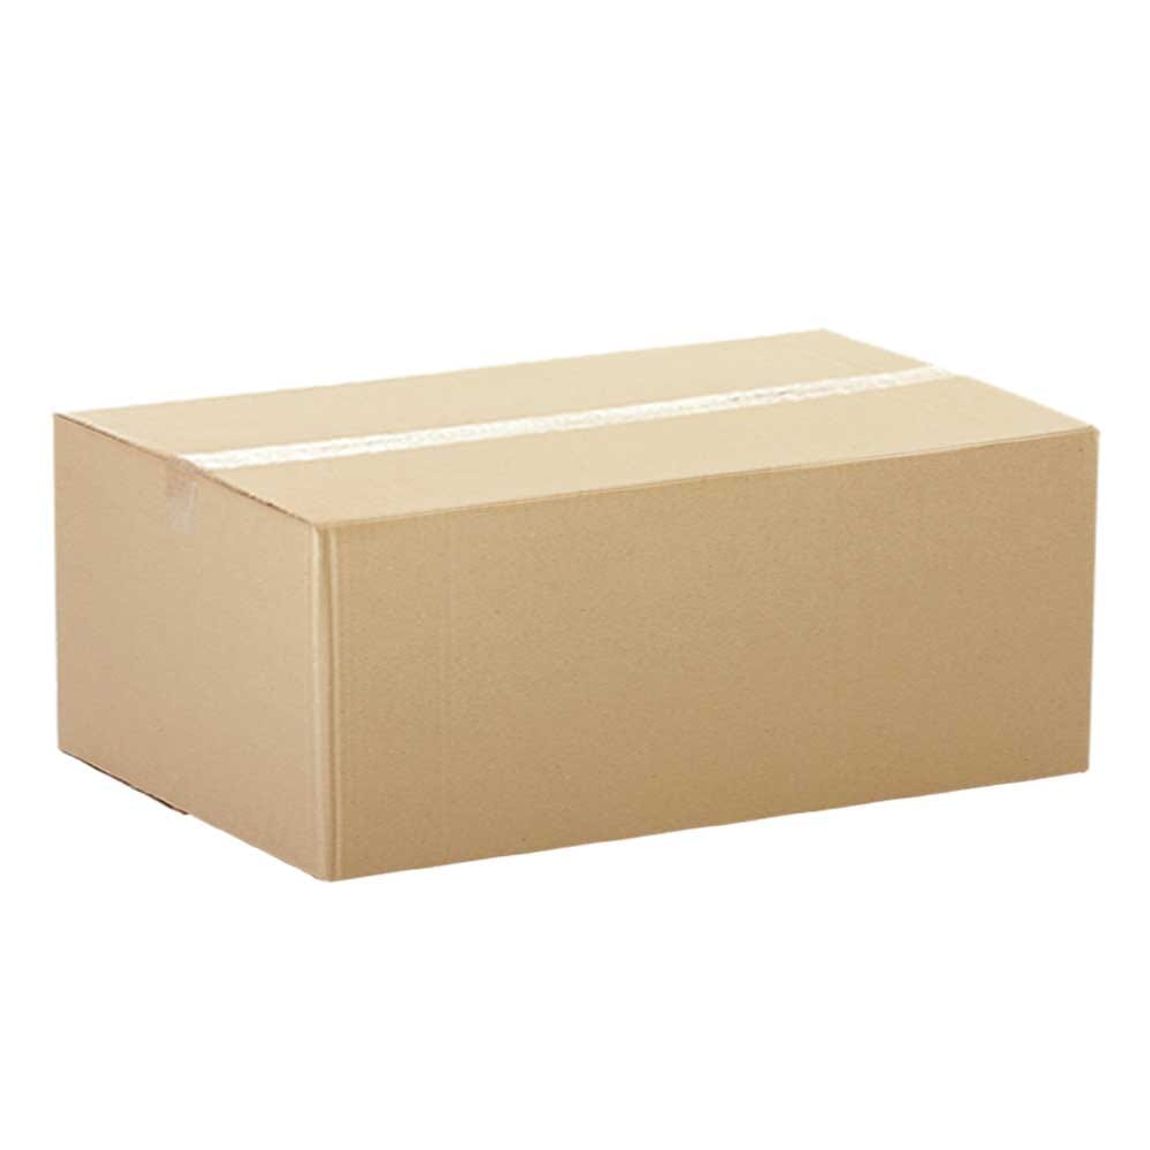 Caja de Cartón para Envíos  50 x 50 x 25 cm - OfficeMax